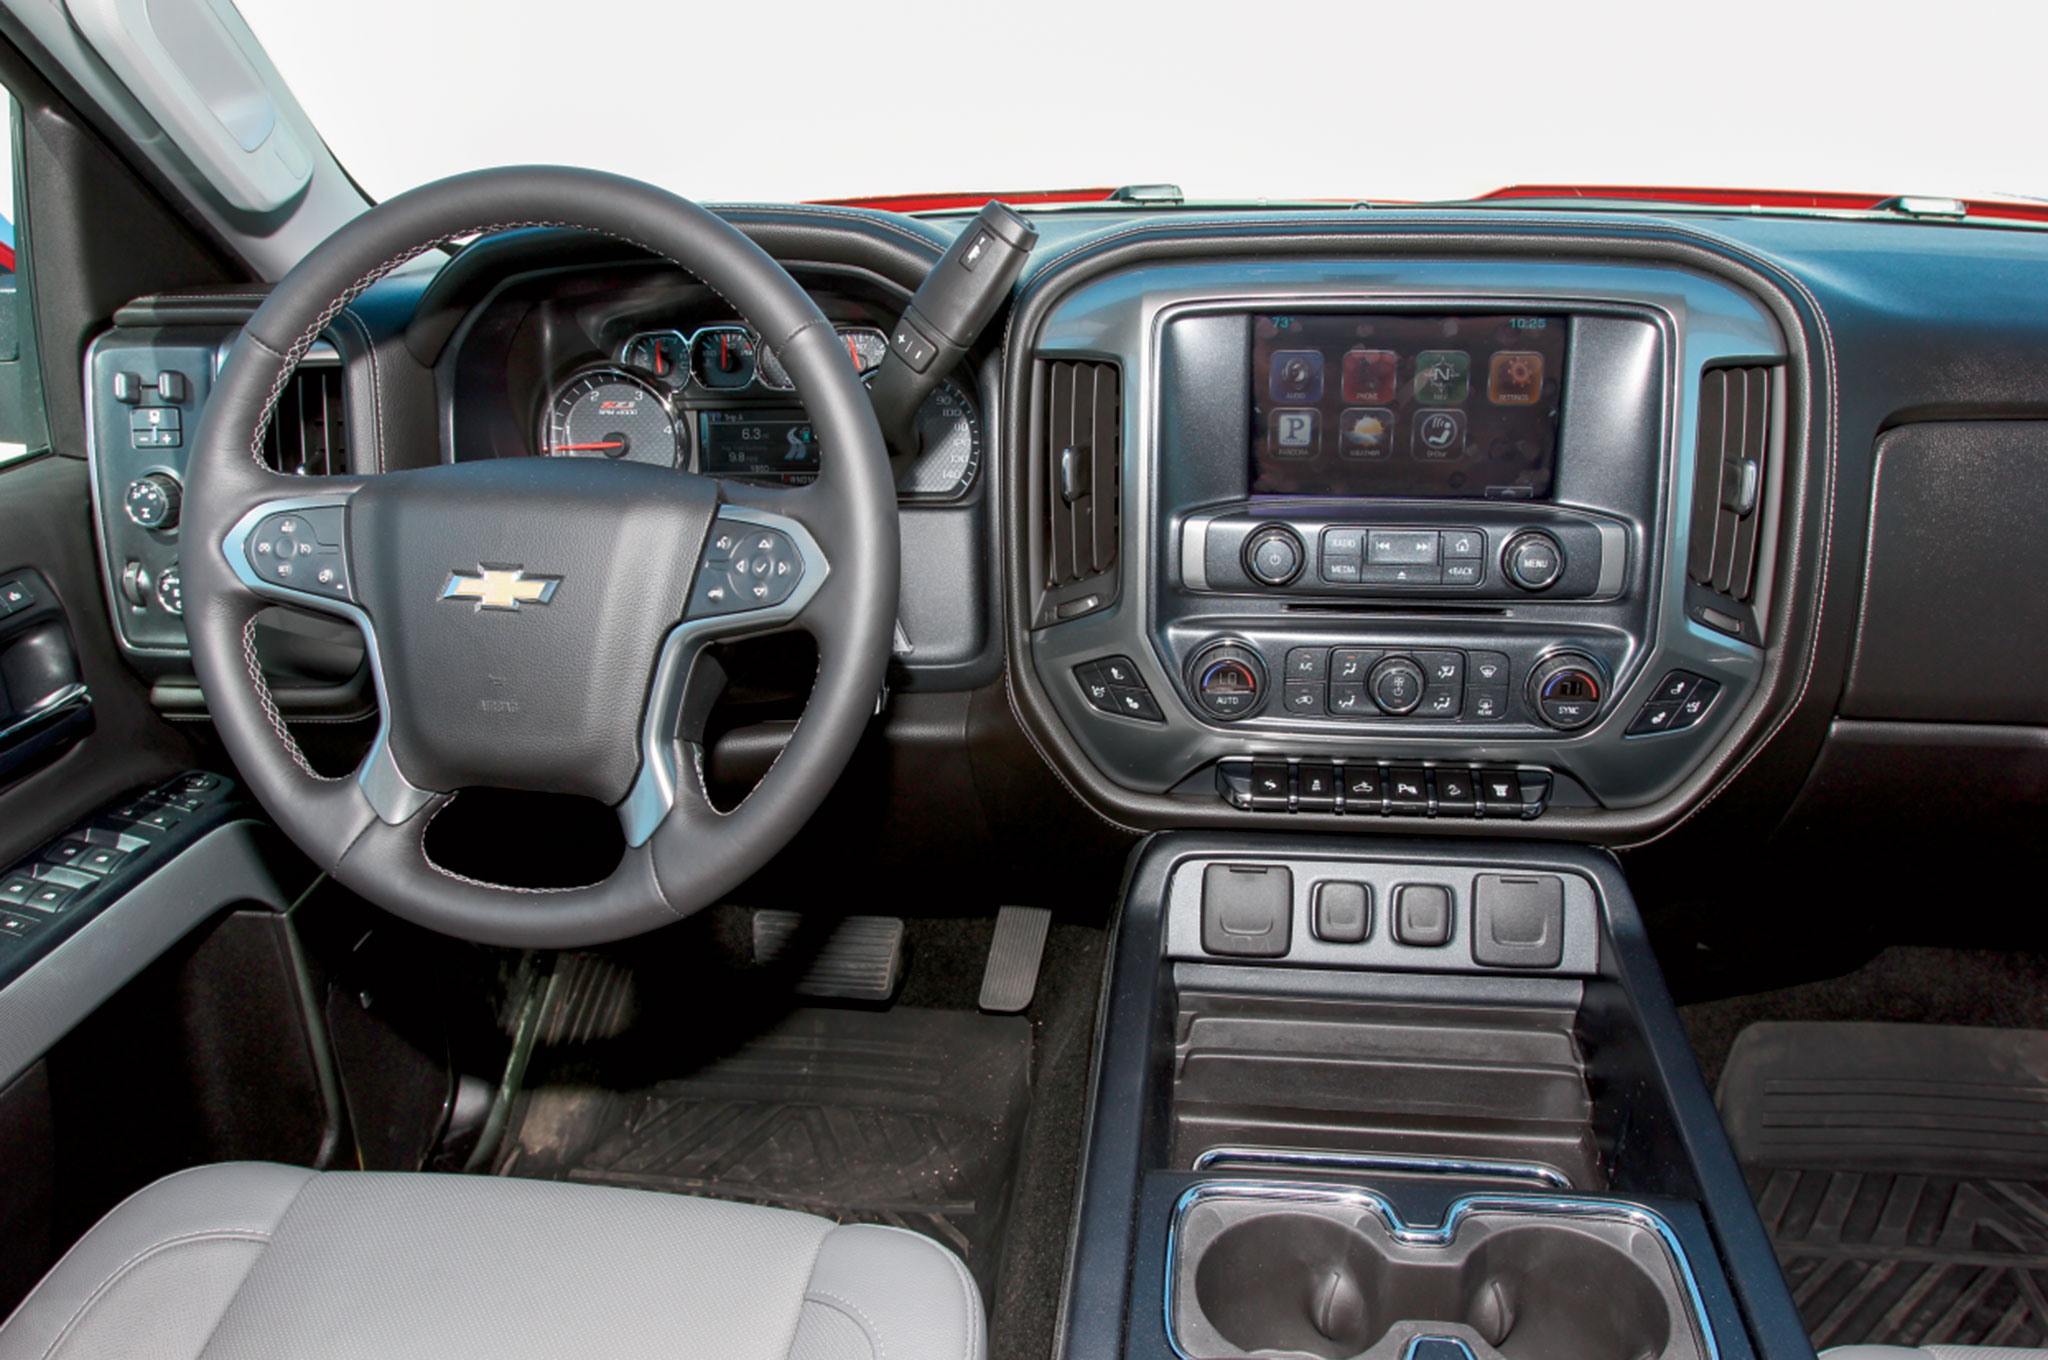 2015 Chevrolet Colorado Z71 Interior - image #64